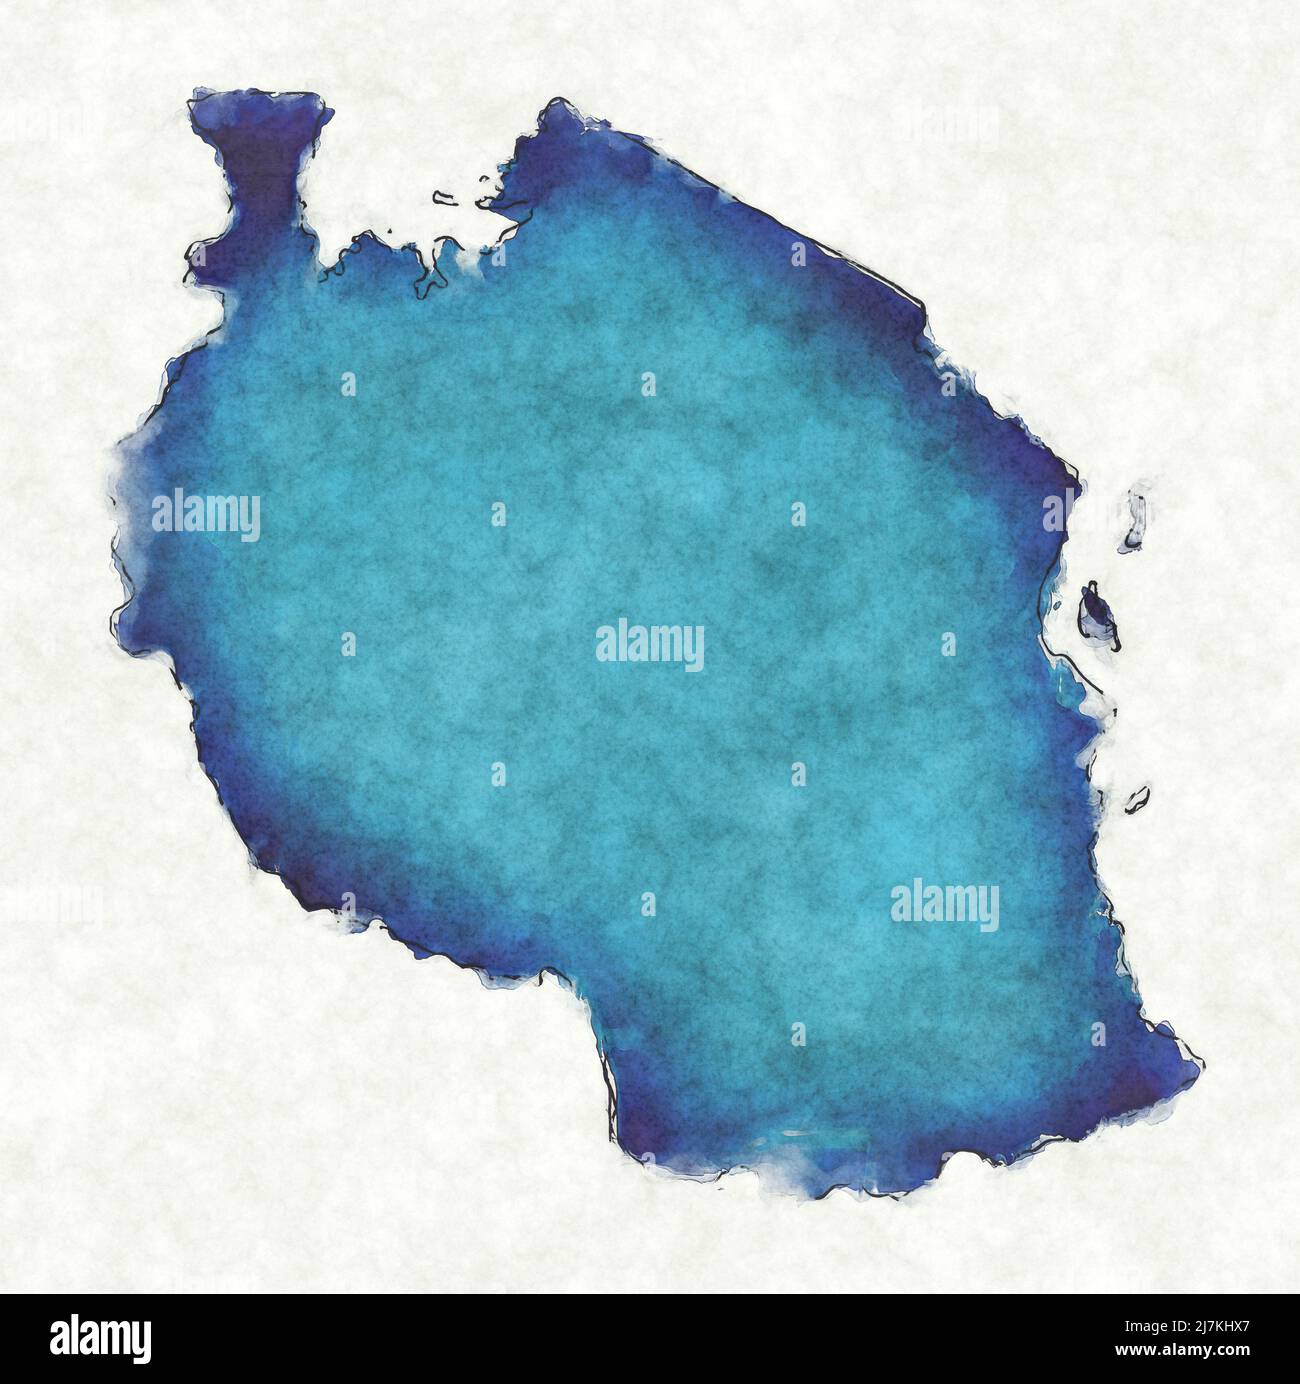 Mapa de Tanzania con líneas trazadas e ilustración de acuarela azul Foto de stock